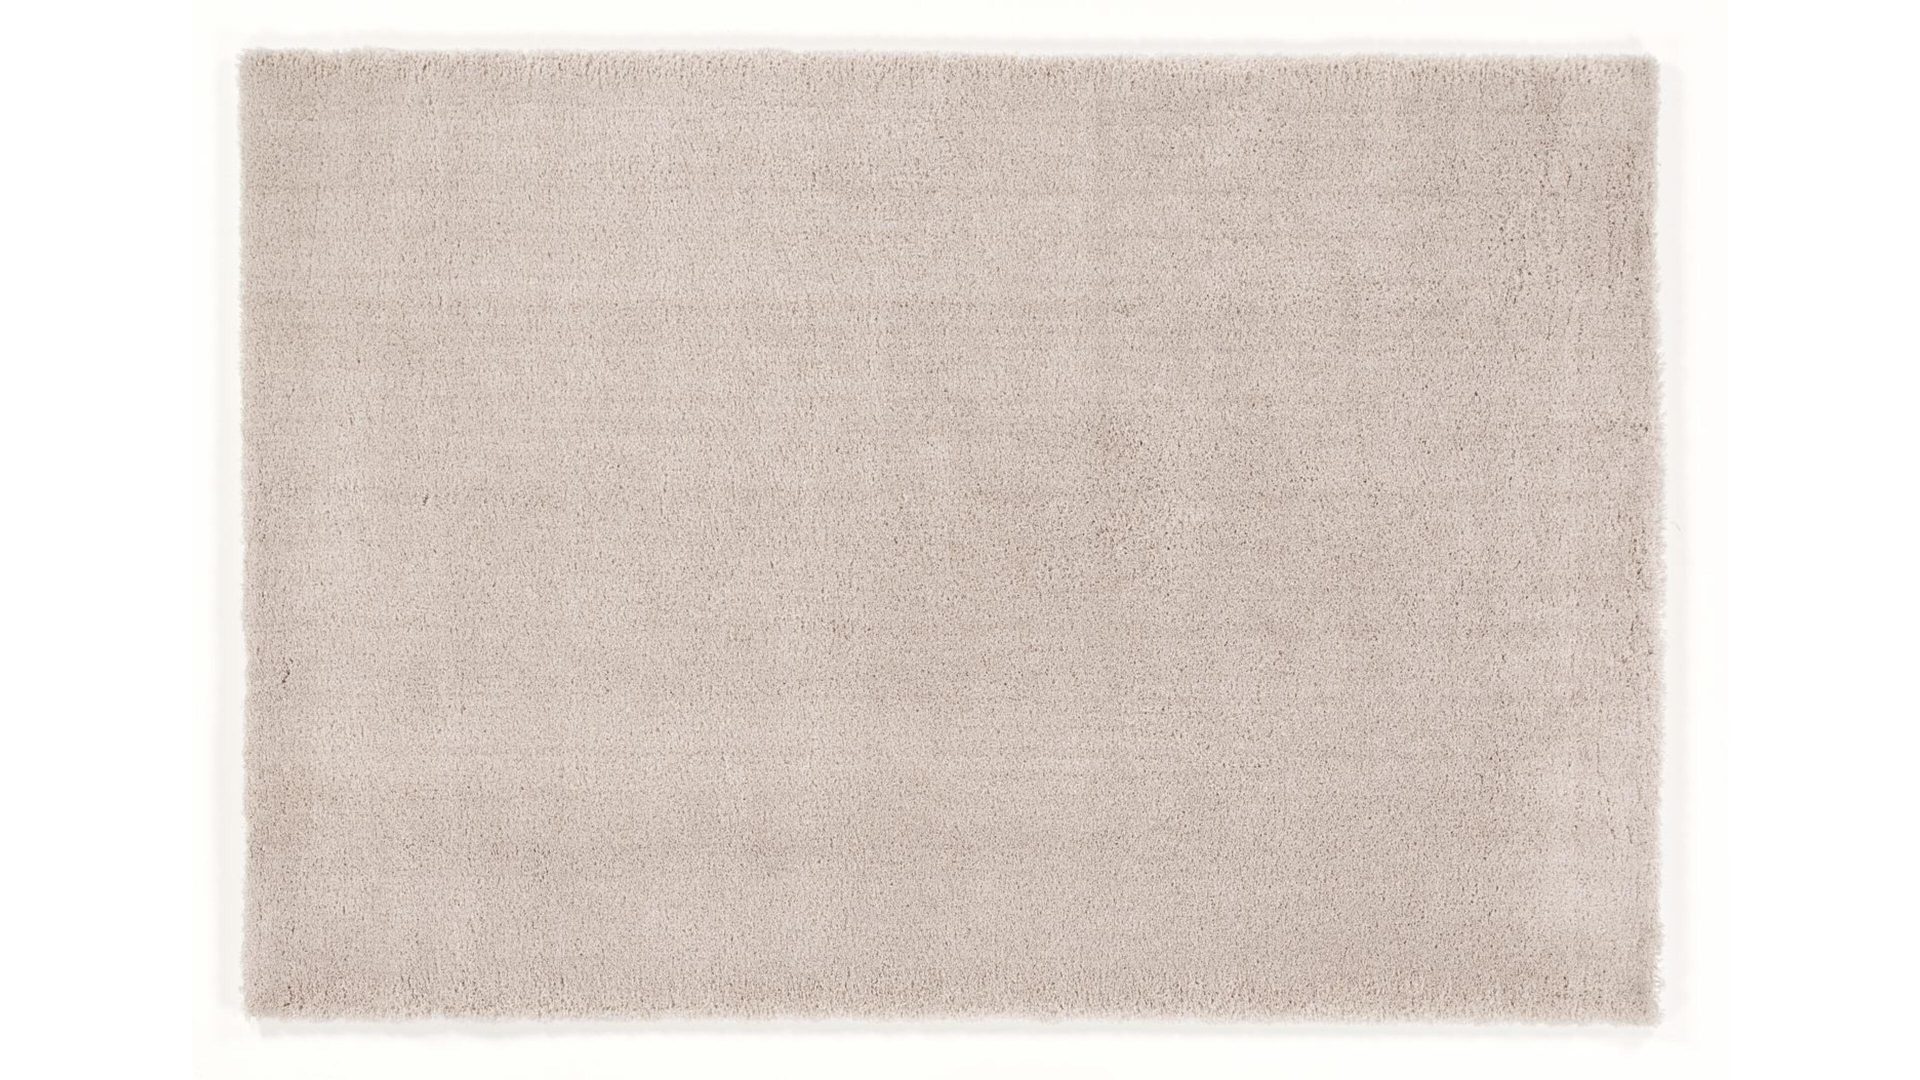 Shaggyteppich Oci aus Kunstfaser in Beige Shaggyteppich Royal Shaggy für Ihre Wohnaccessoires beige Kunstfaser – ca. 160 x 230 cm